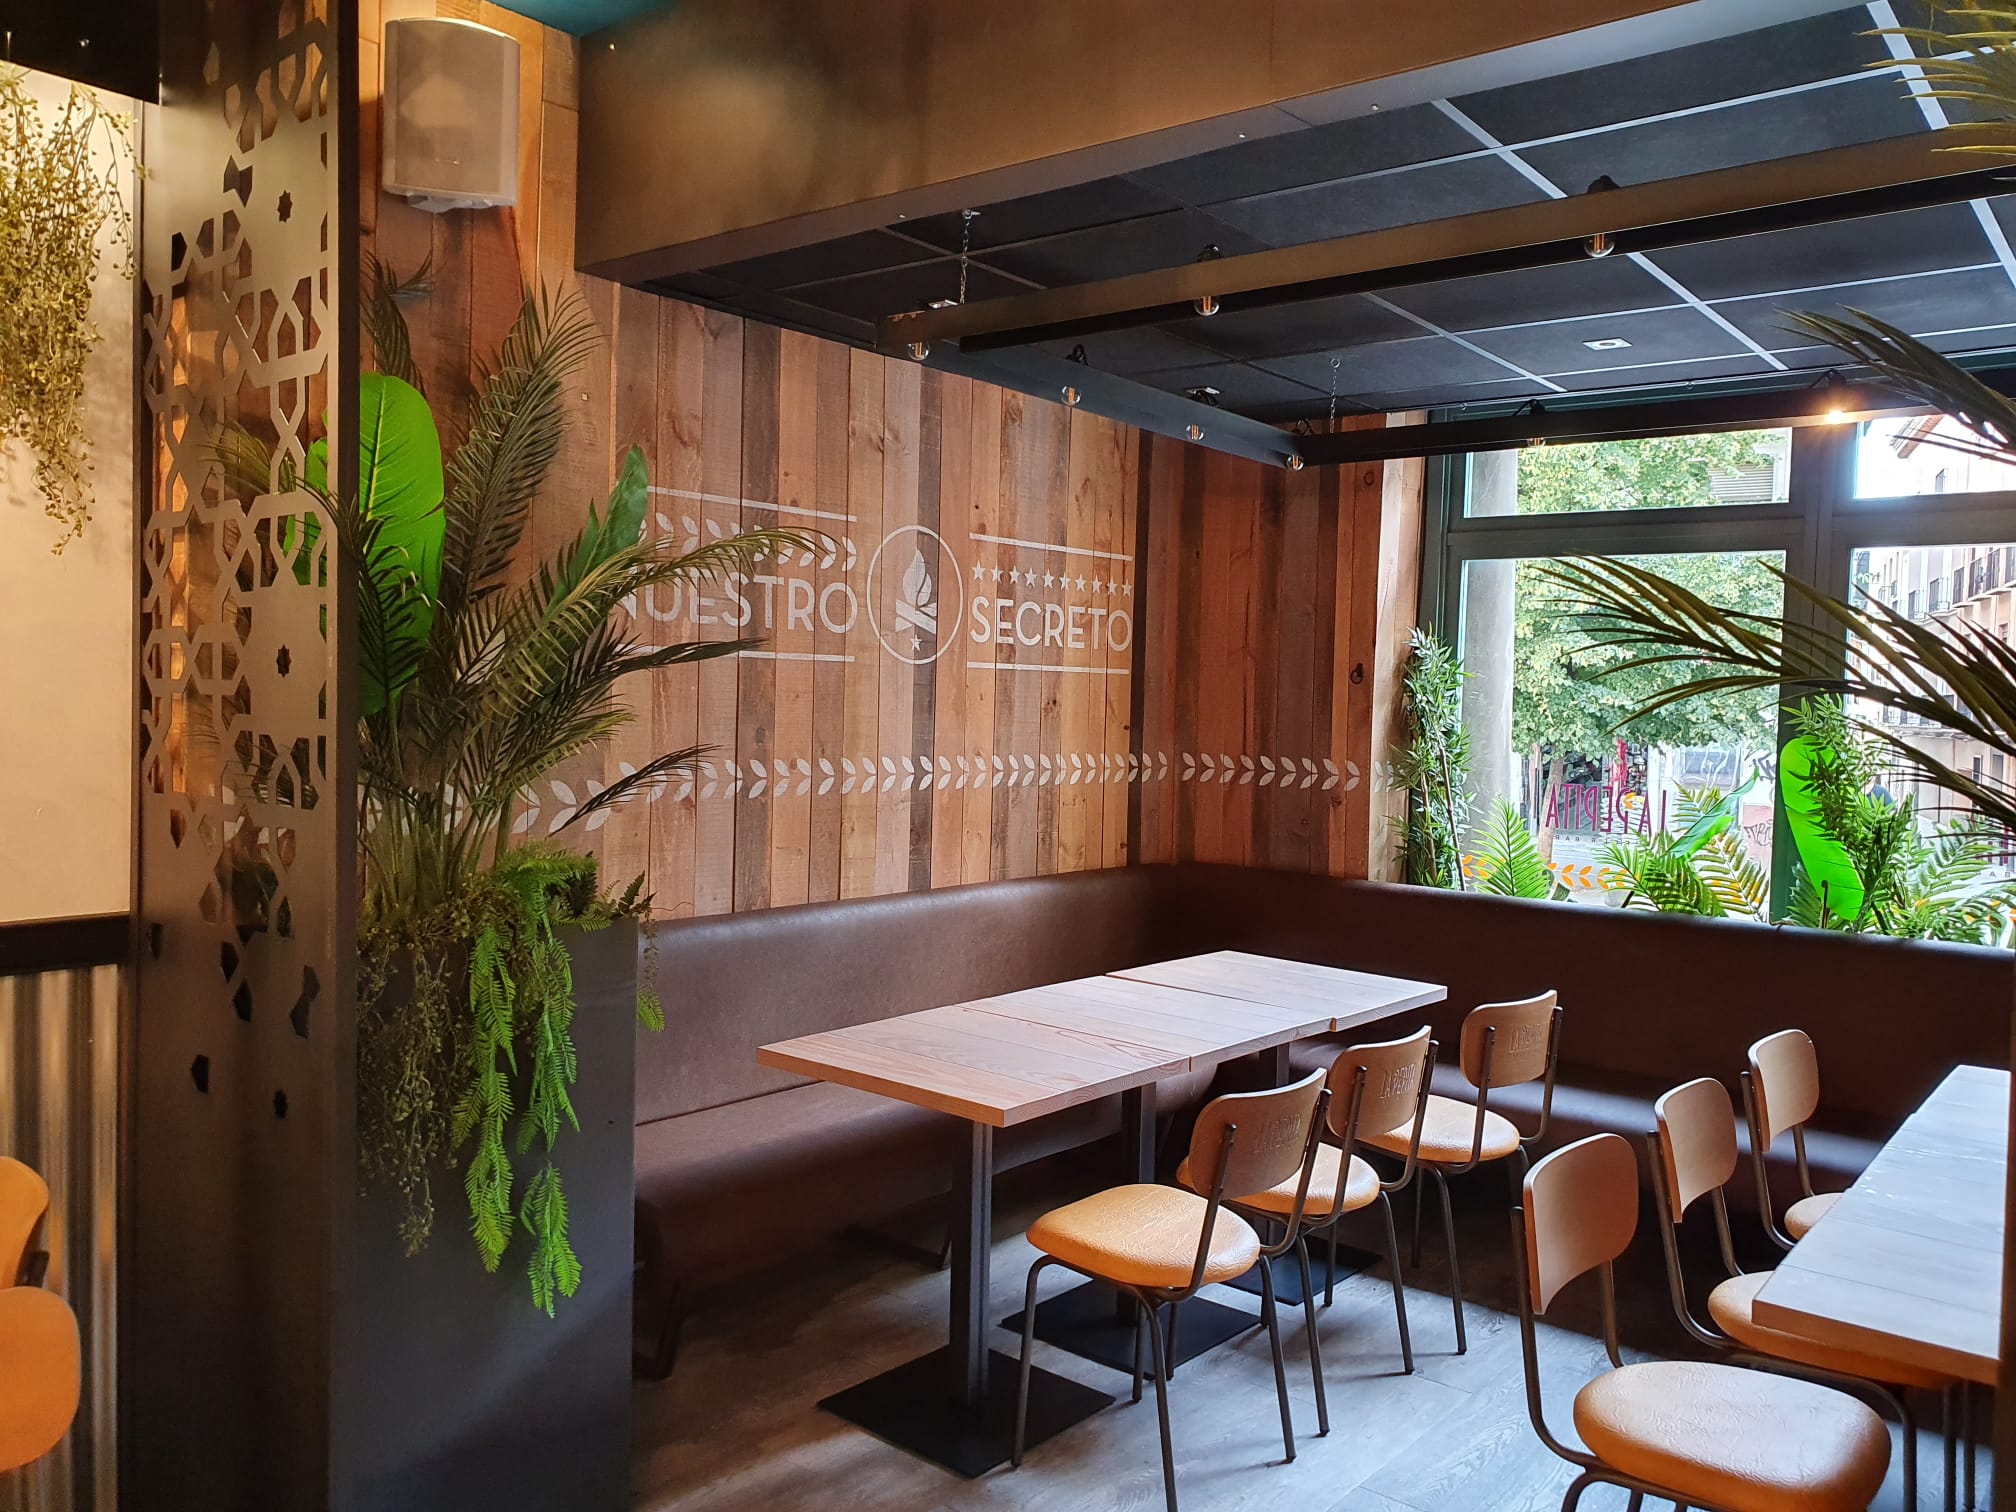 La cadena gallega La Pepita Burger Bar alcanza durante el primer trimestre del año un 65% en la cuota de consumo en casa de sus clientes.